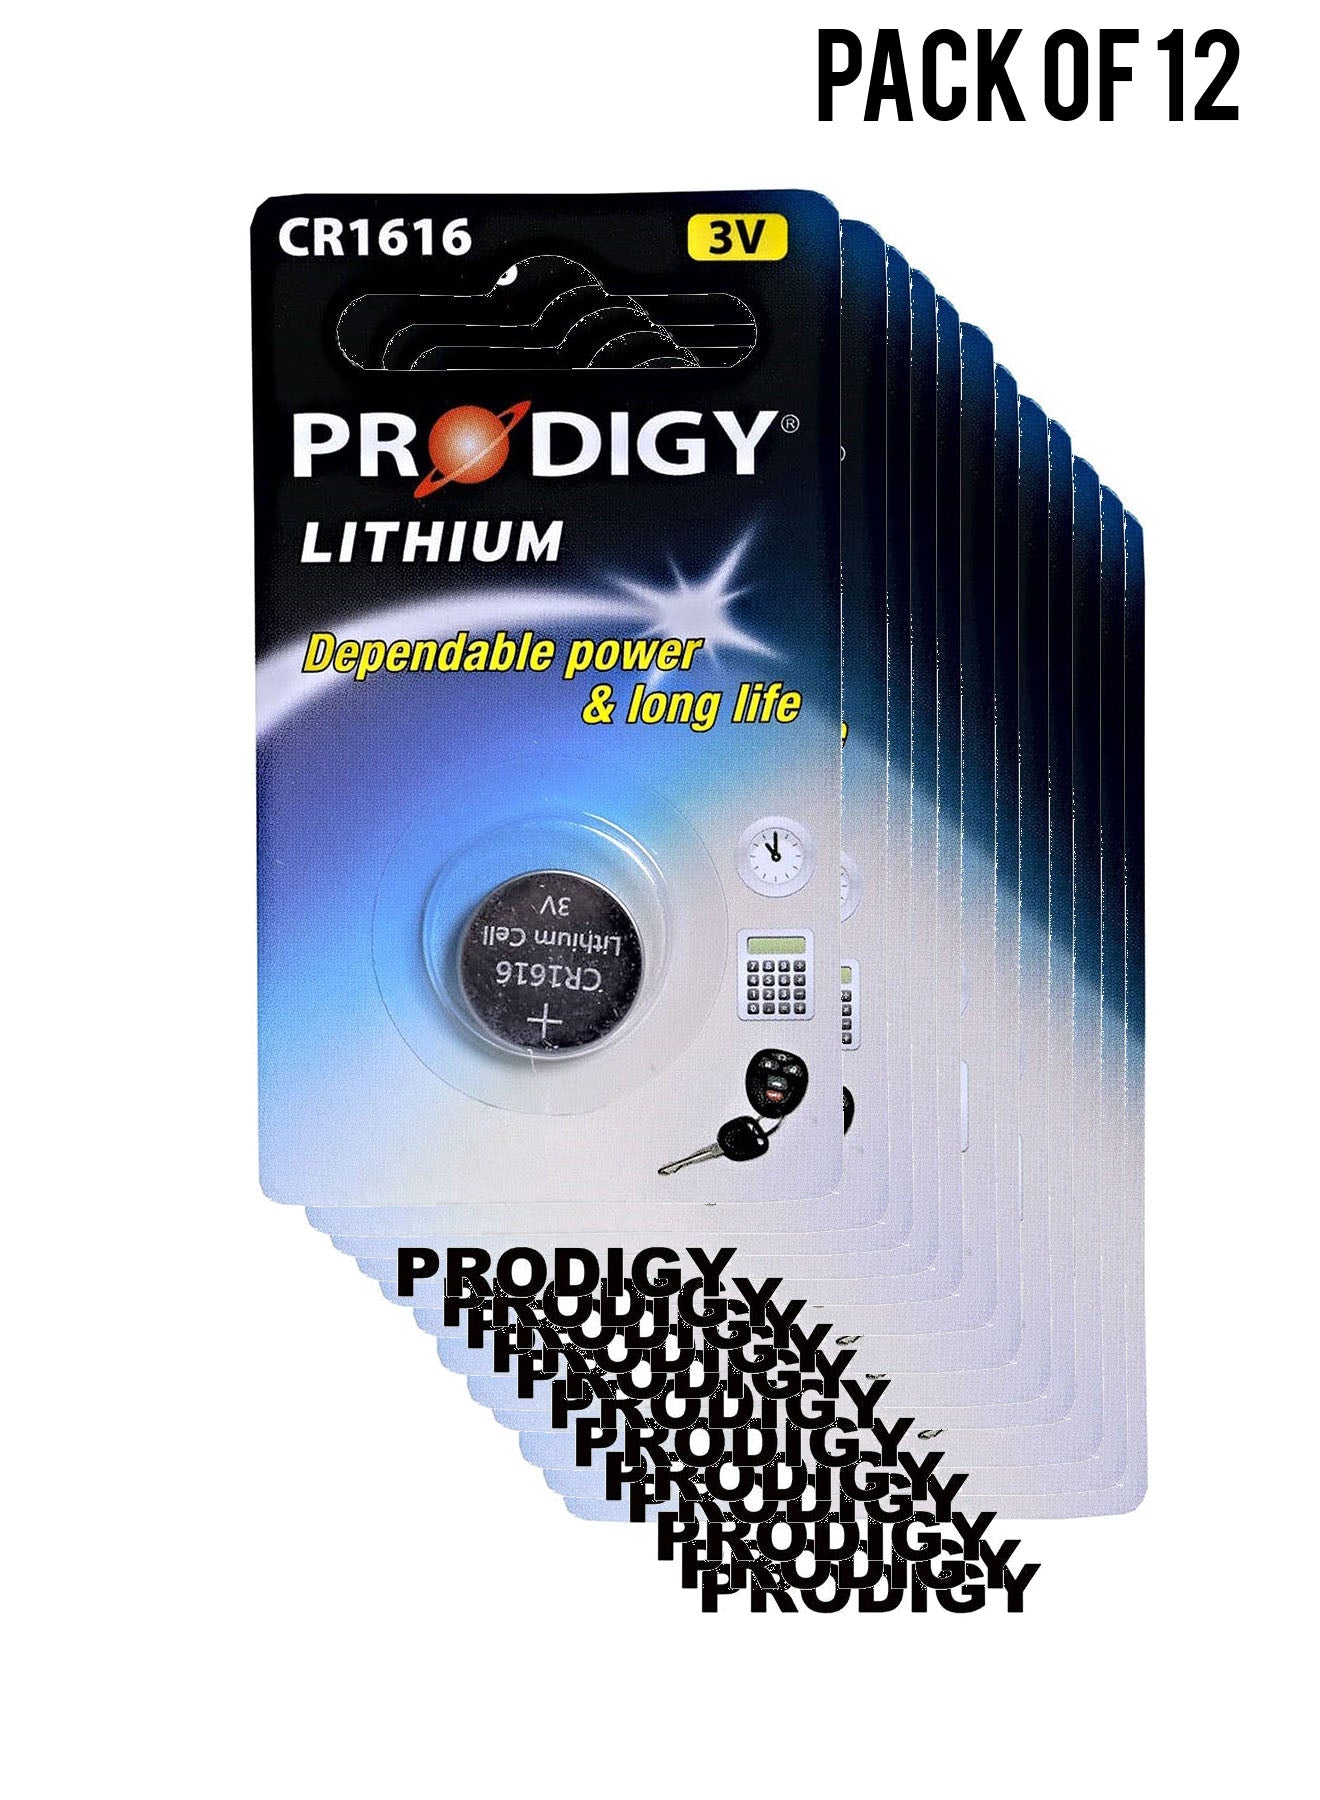 Prodigy Lithium CR1616 3V Value Pack of 12 